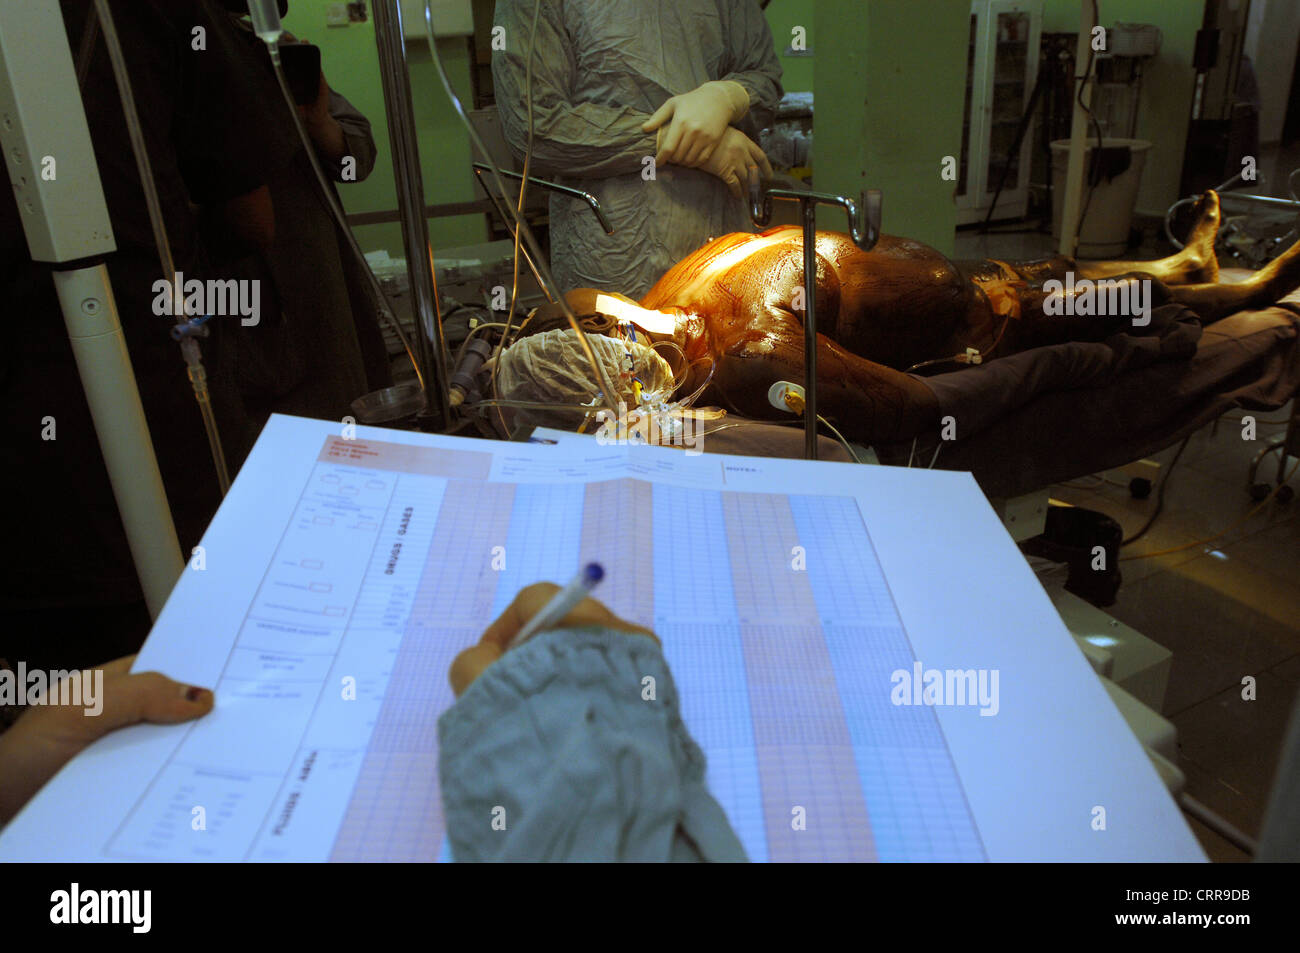 Anestesista llenado gráfico con anestésico preparado Paciente en segundo plano. Foto de stock